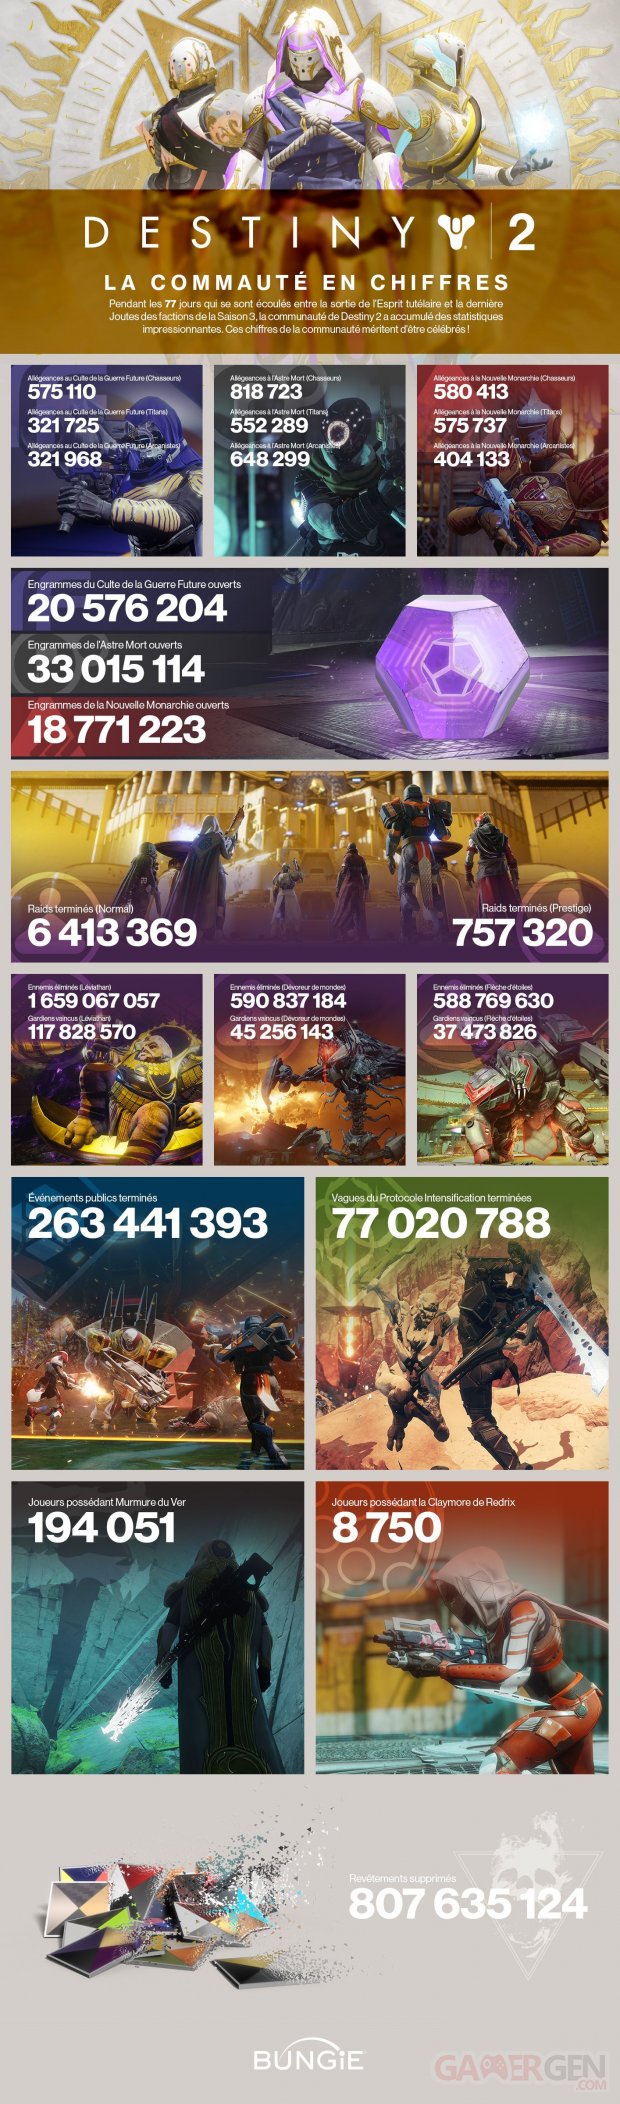 Destiny 2 infographie Saison 3 14 08 2018